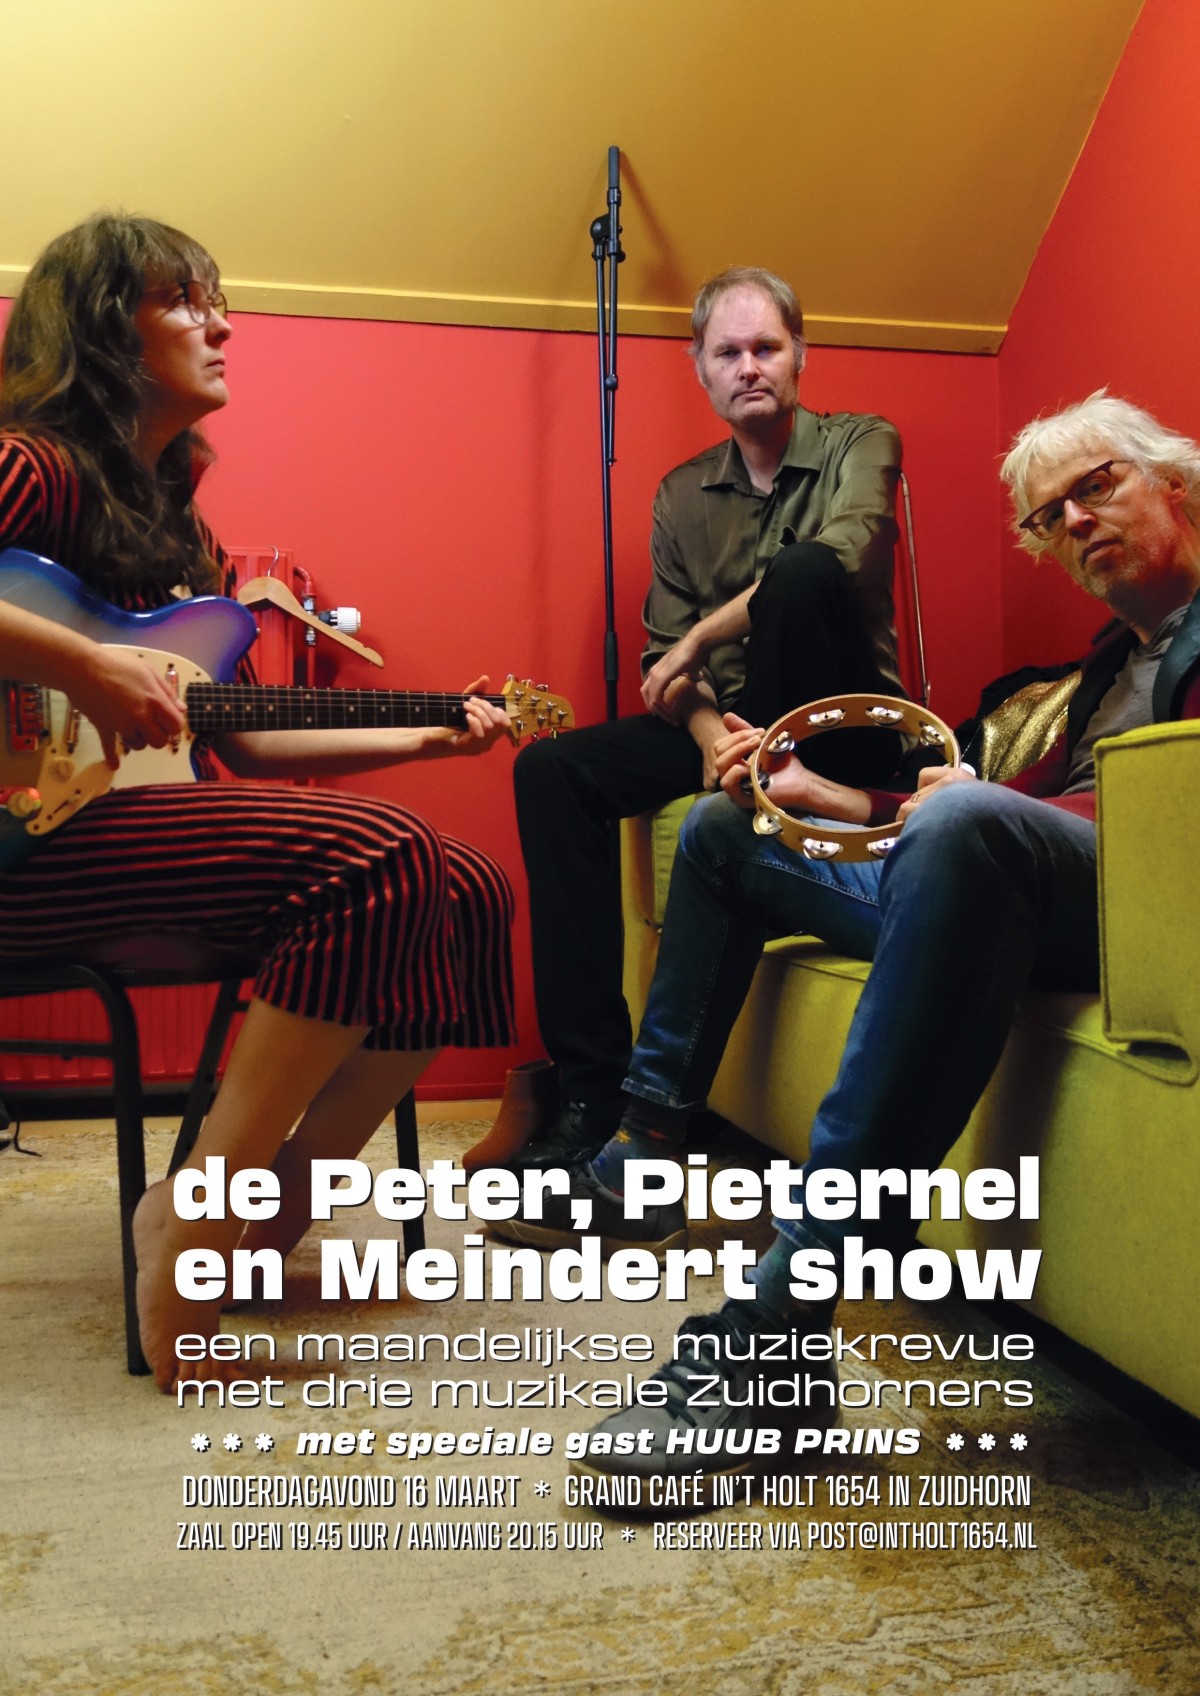 De Peter Pieternel en Meindert show